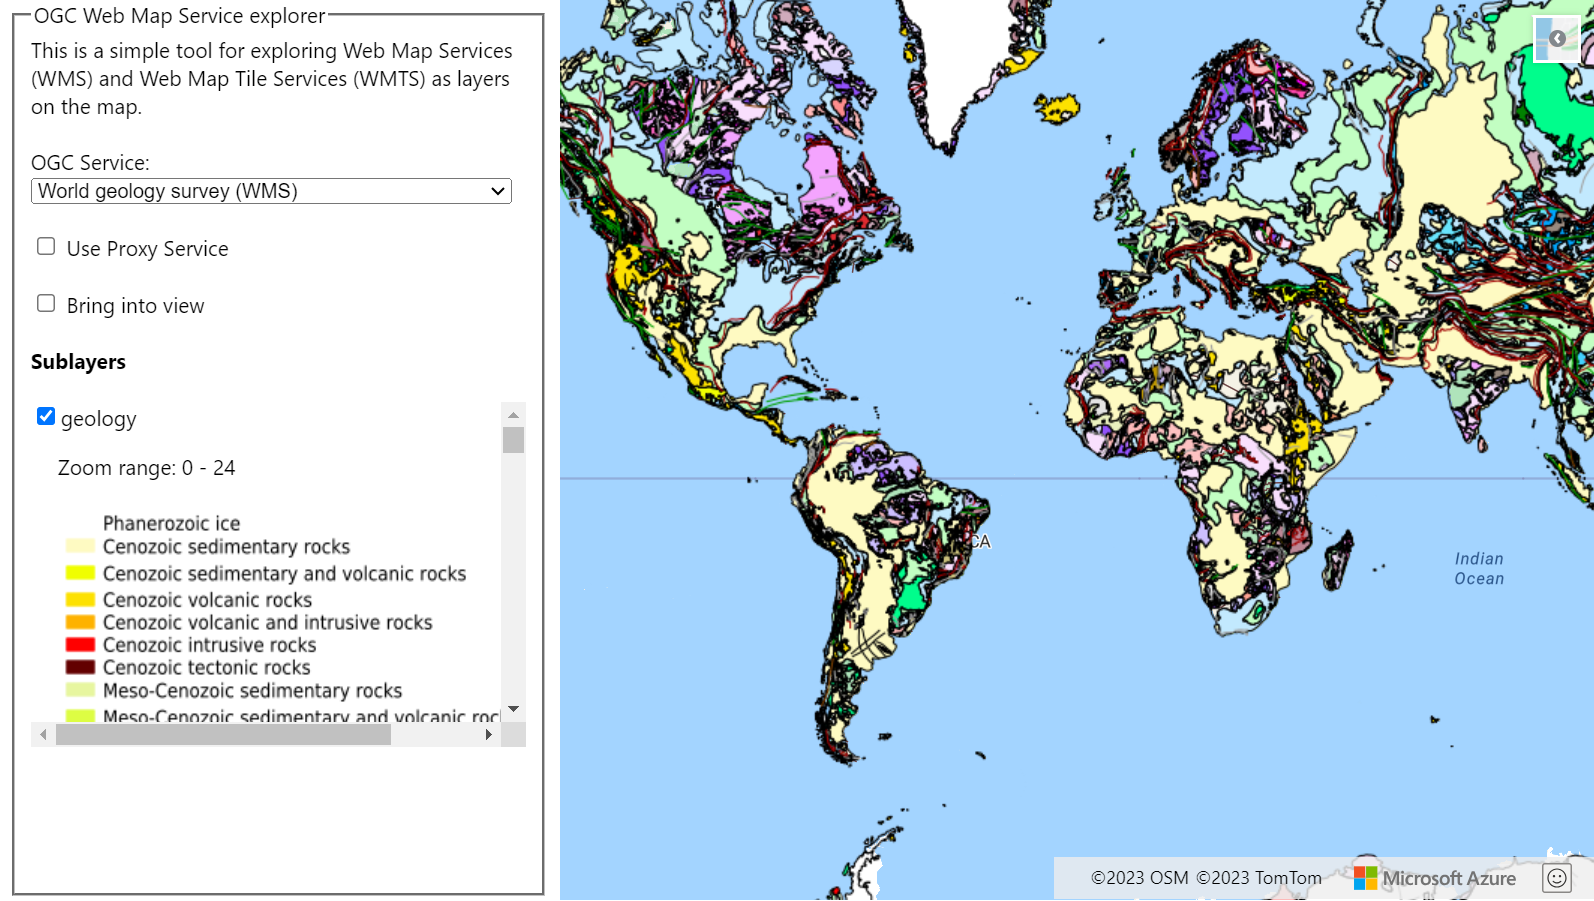 Snímek obrazovky znázorňující mapu s vrstvou WMTS, která pochází z průzkumu světové geologie Vlevo od mapy je rozevírací seznam zobrazující služby OGC, které je možné vybrat.